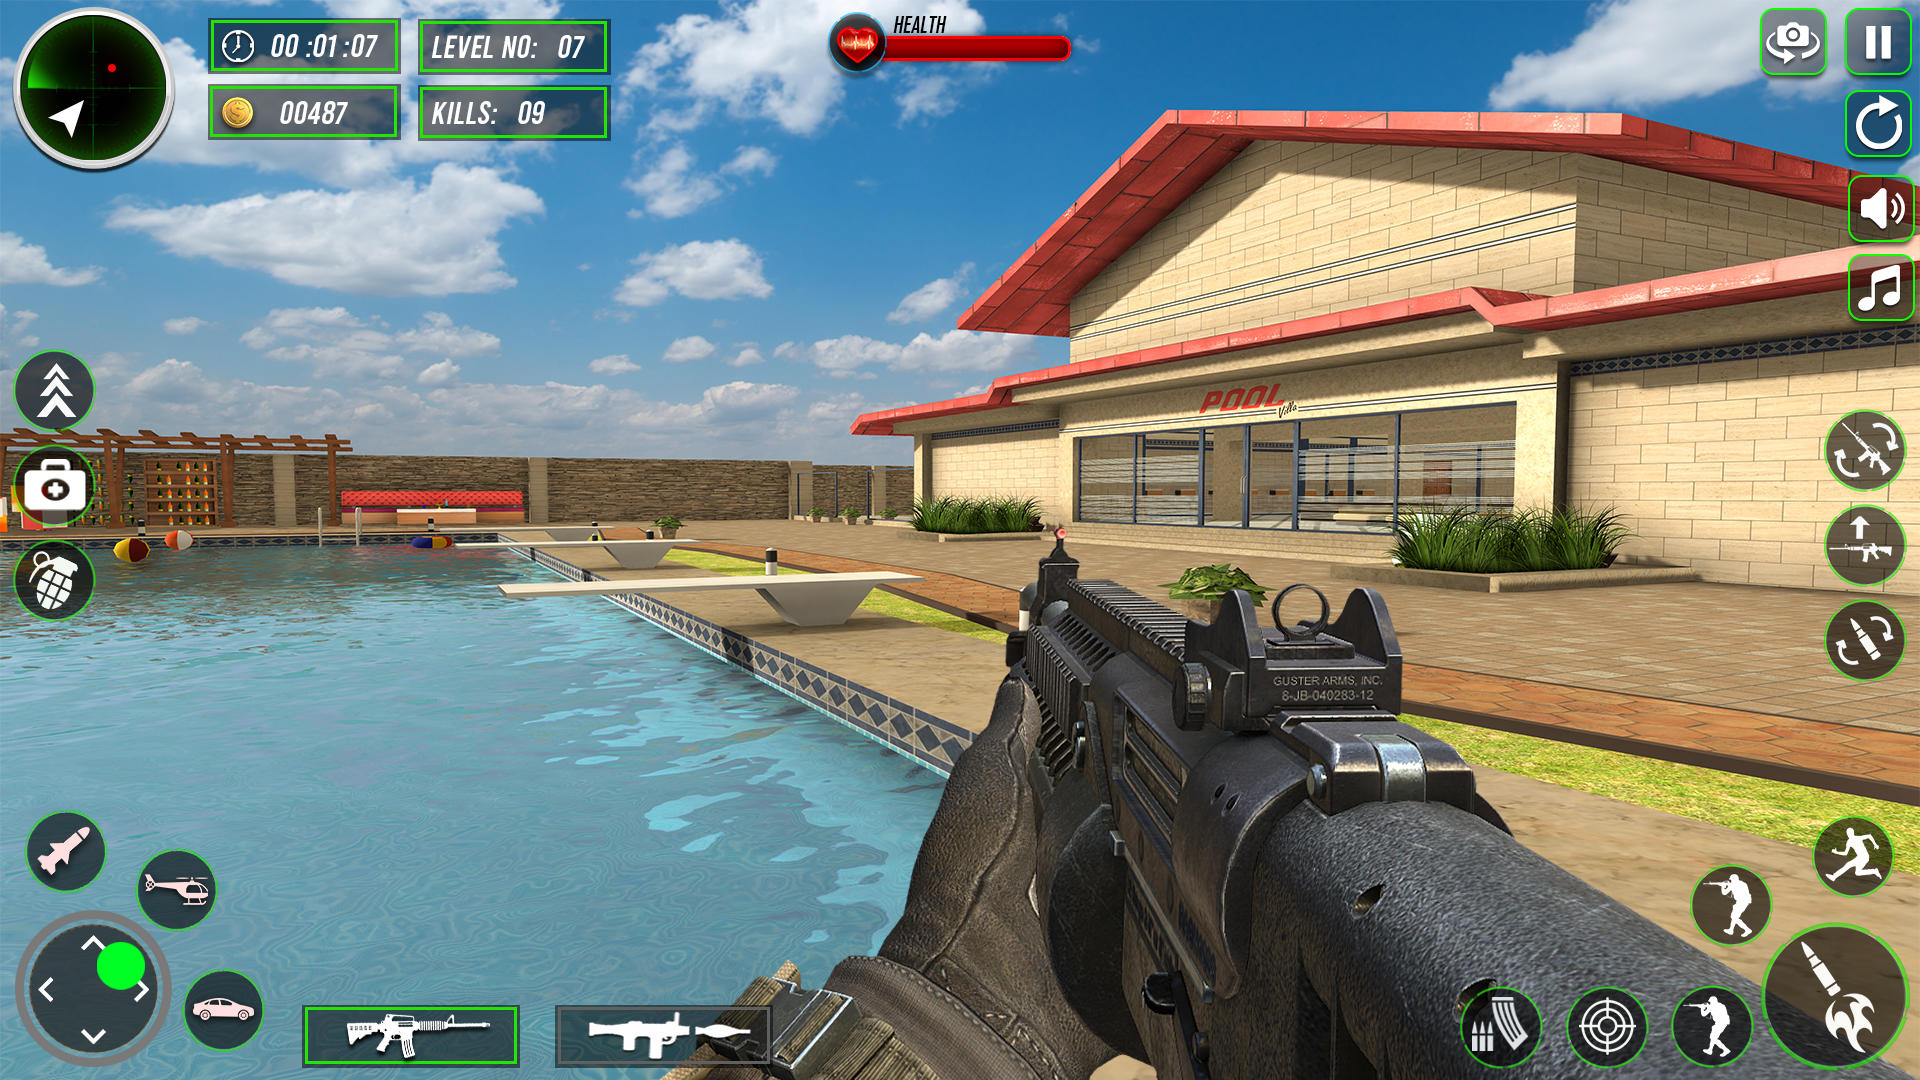 Screenshot 1 of Permainan Menembak Fps Gun 3d 1.1.30